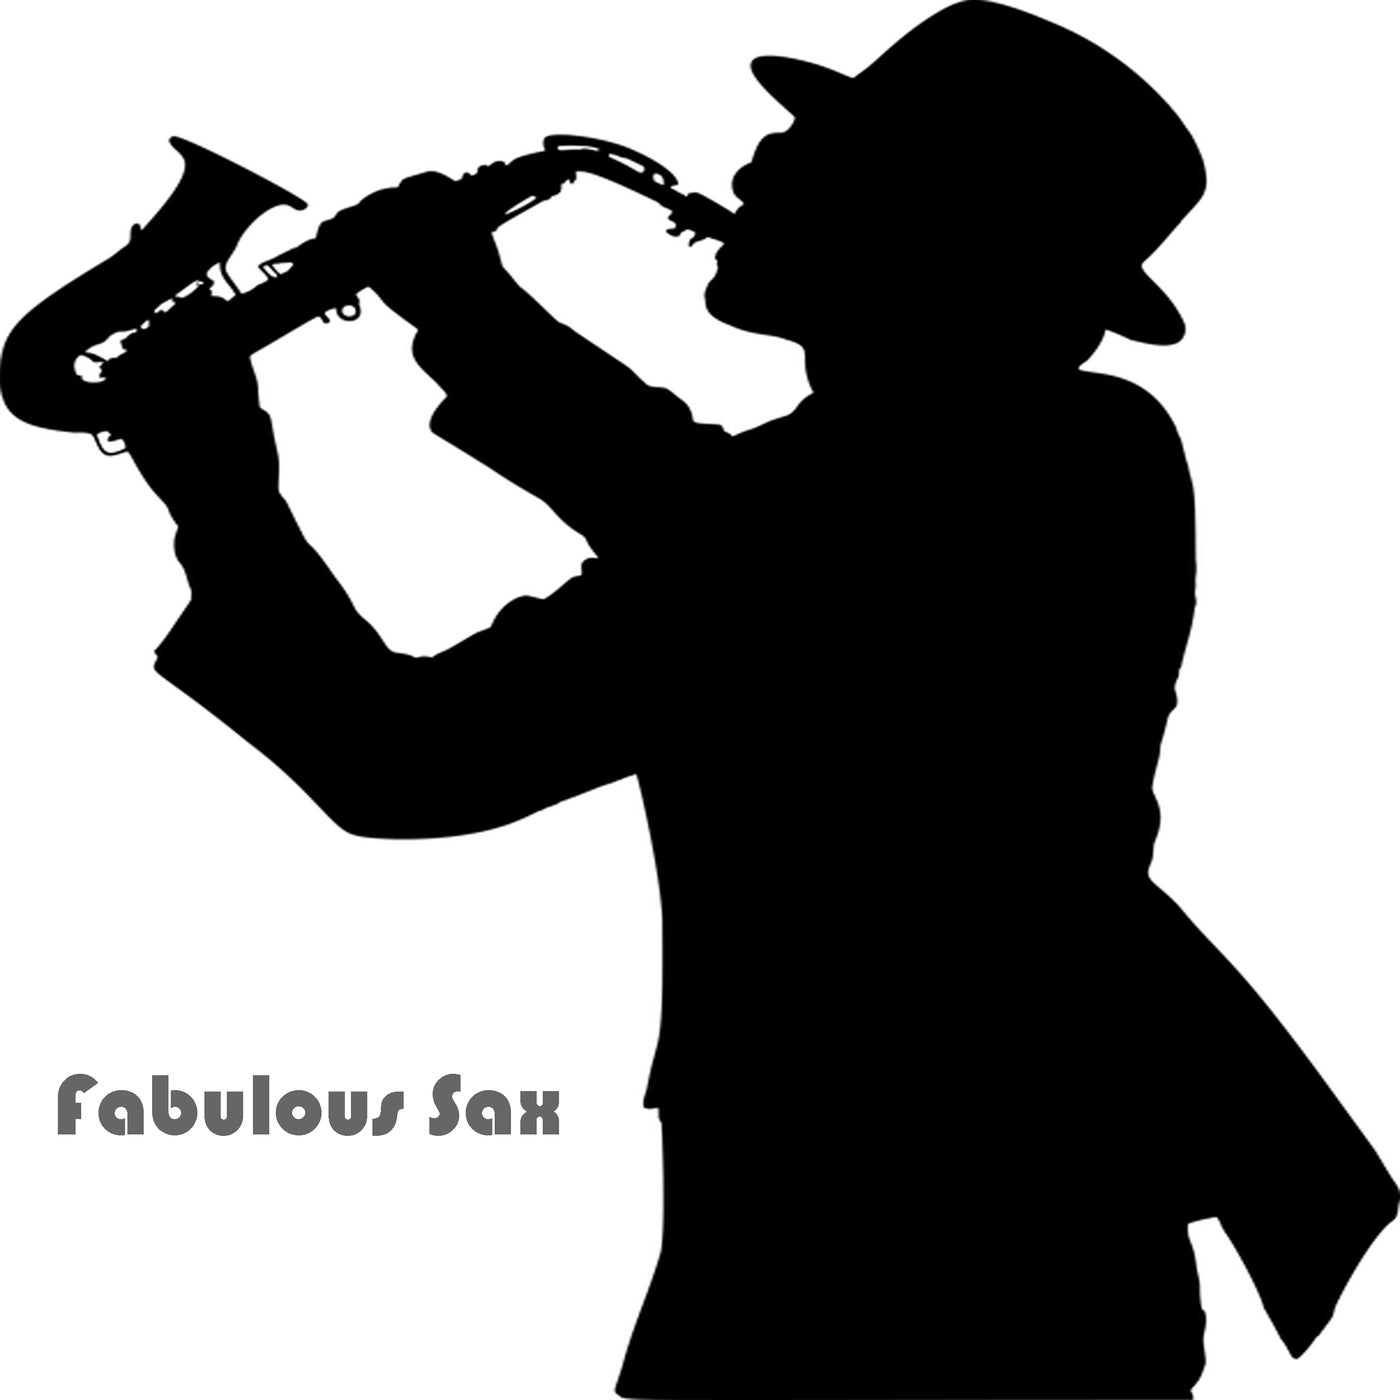 Fabulous Sax